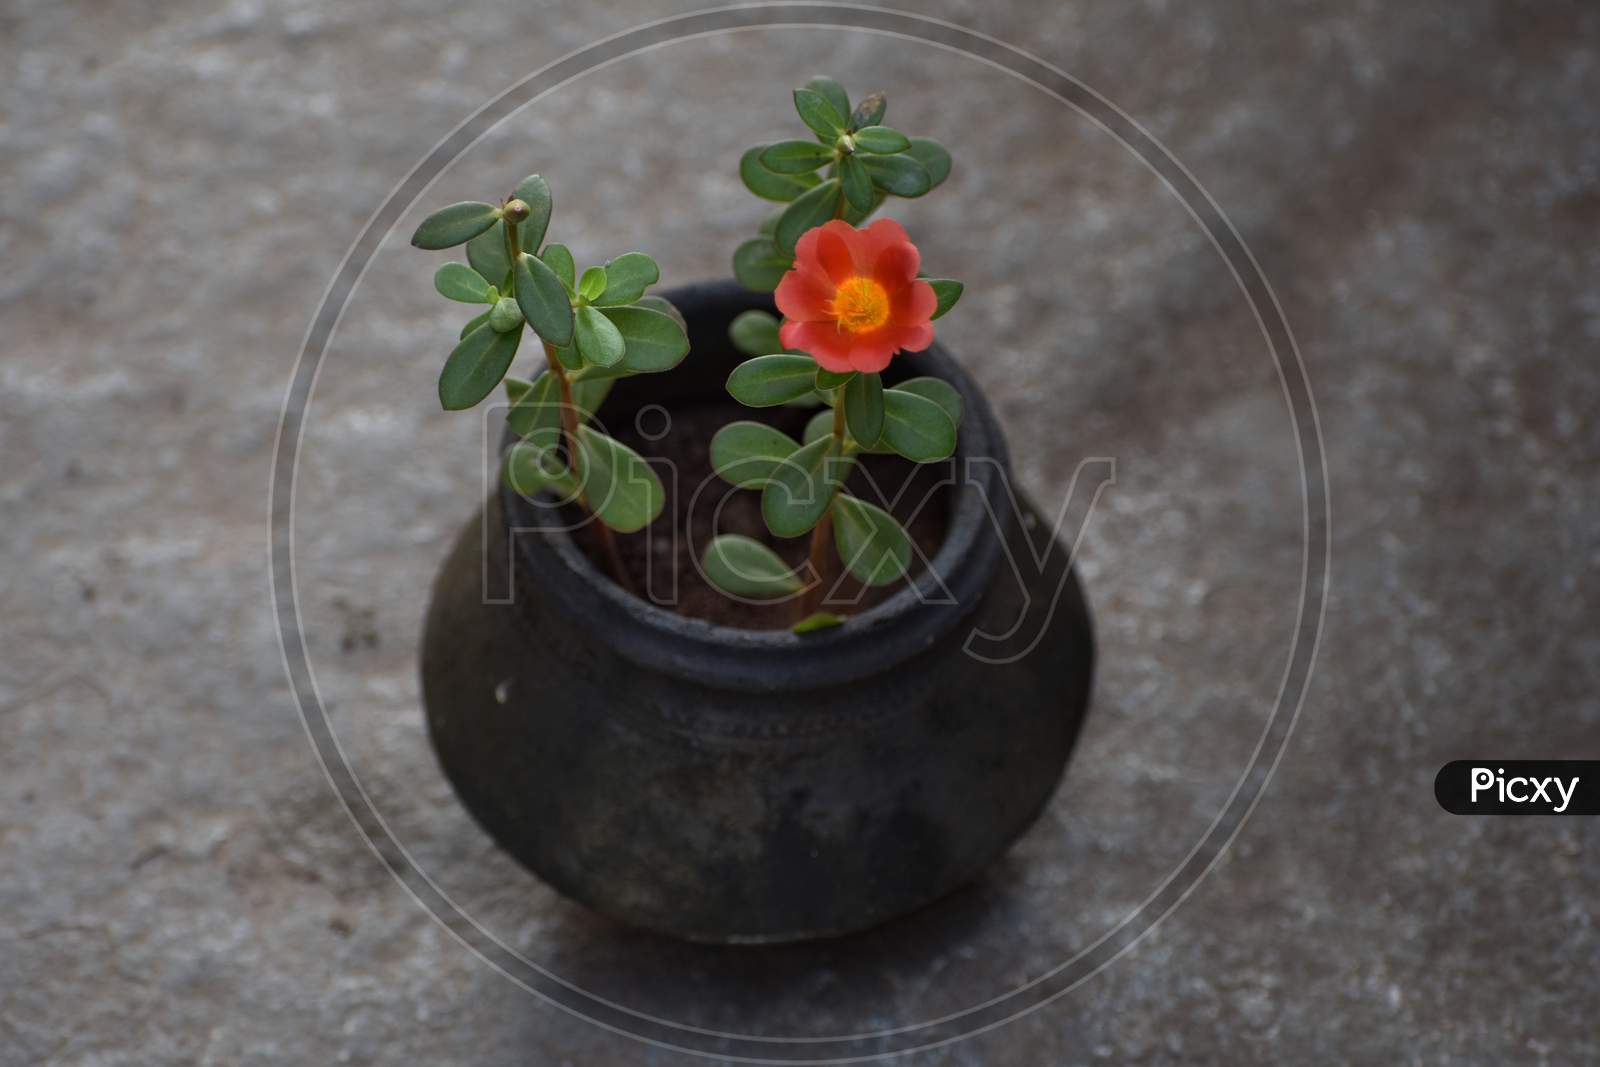 Flower plant in soil pot